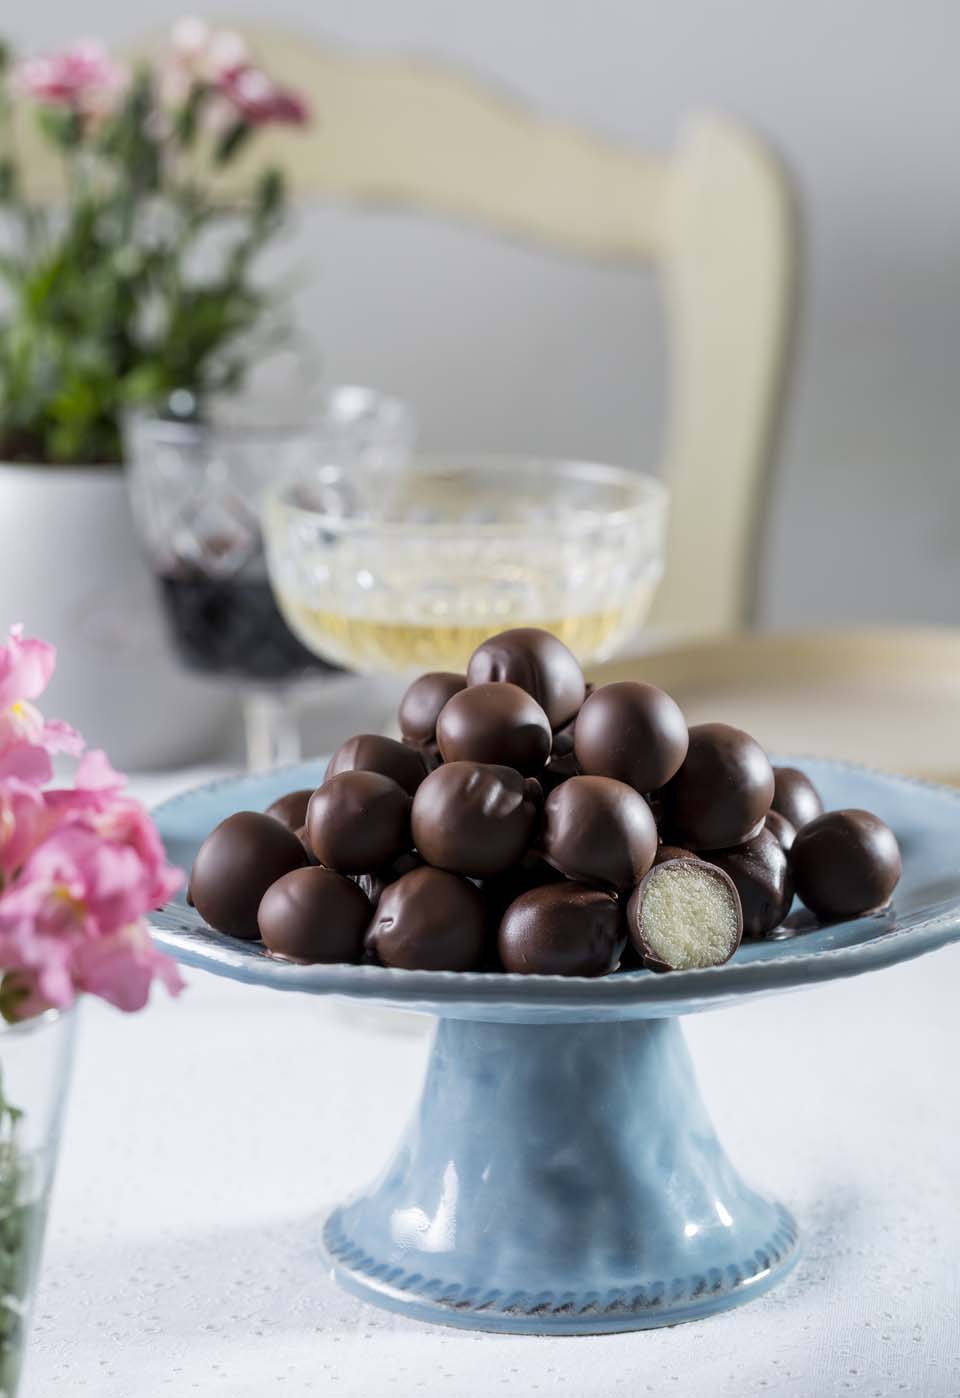  Марципановые конфеты в шоколаде. Фото: Боаз Лави